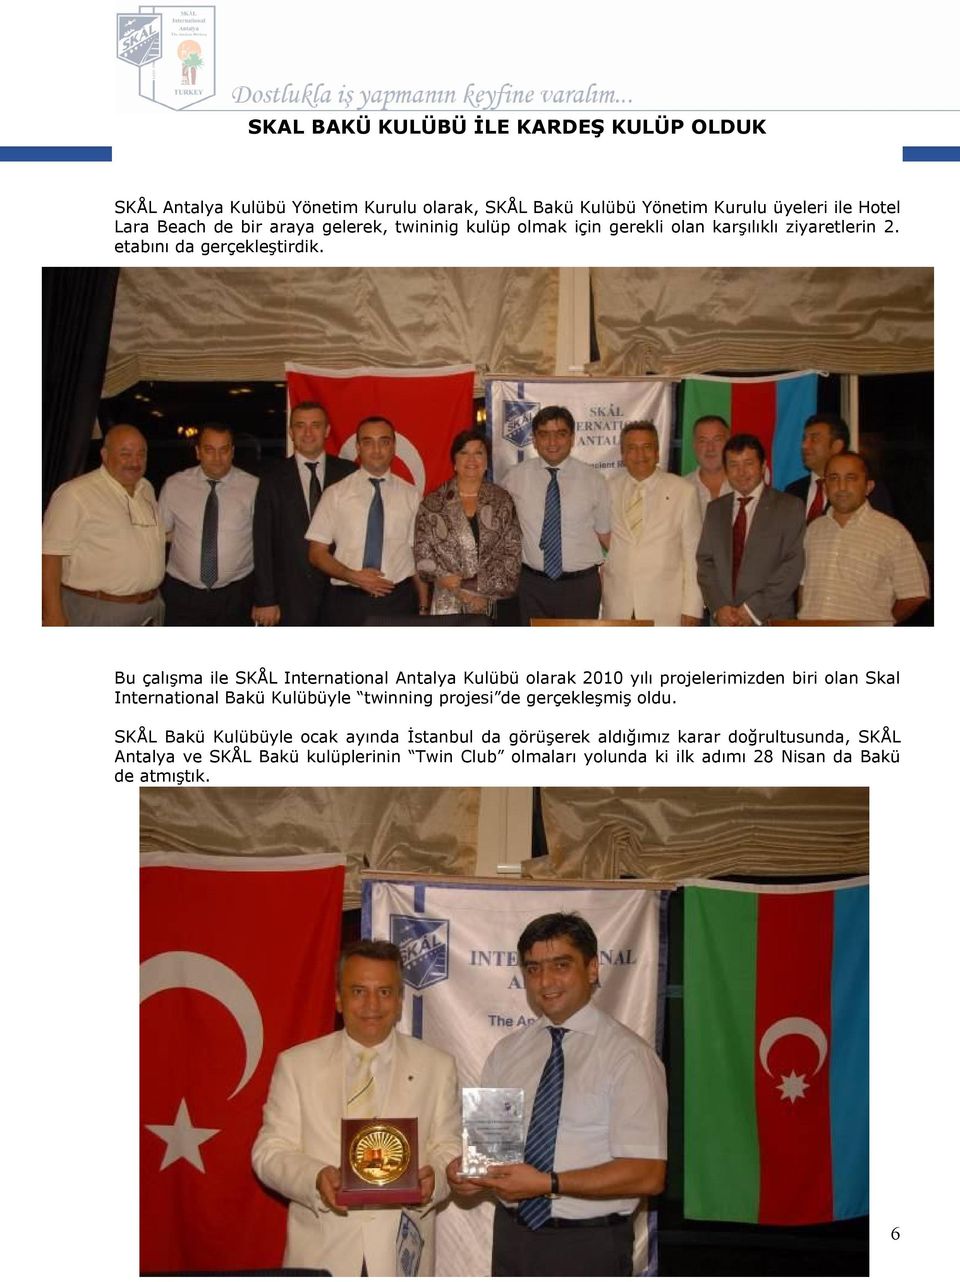 Bu çalışma ile SKÅL International Antalya Kulübü olarak 2010 yılı projelerimizden biri olan Skal International Bakü Kulübüyle twinning projesi de